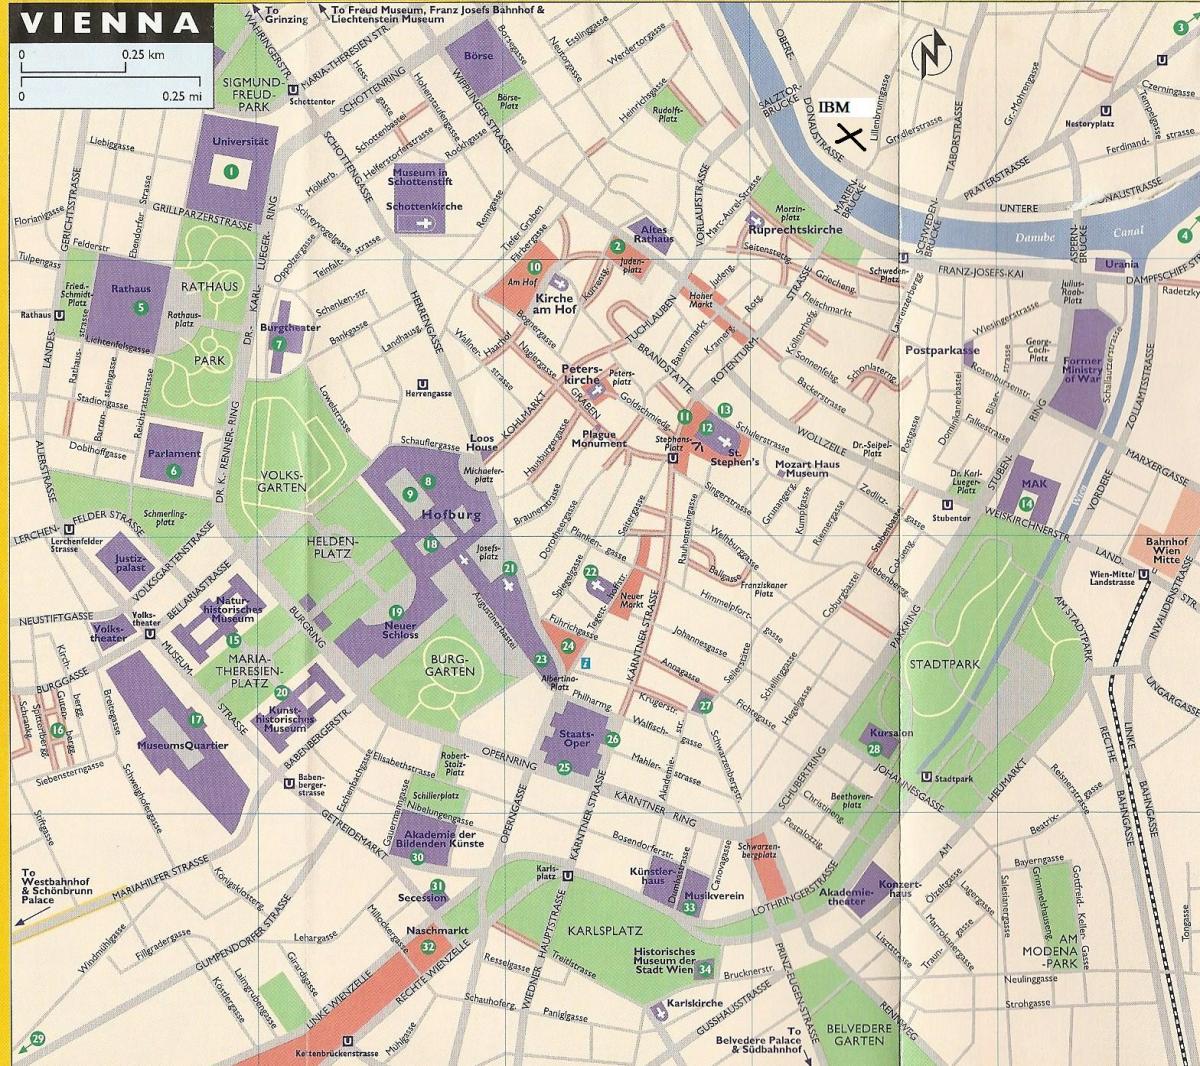 خريطة المتاجر في فيينا 